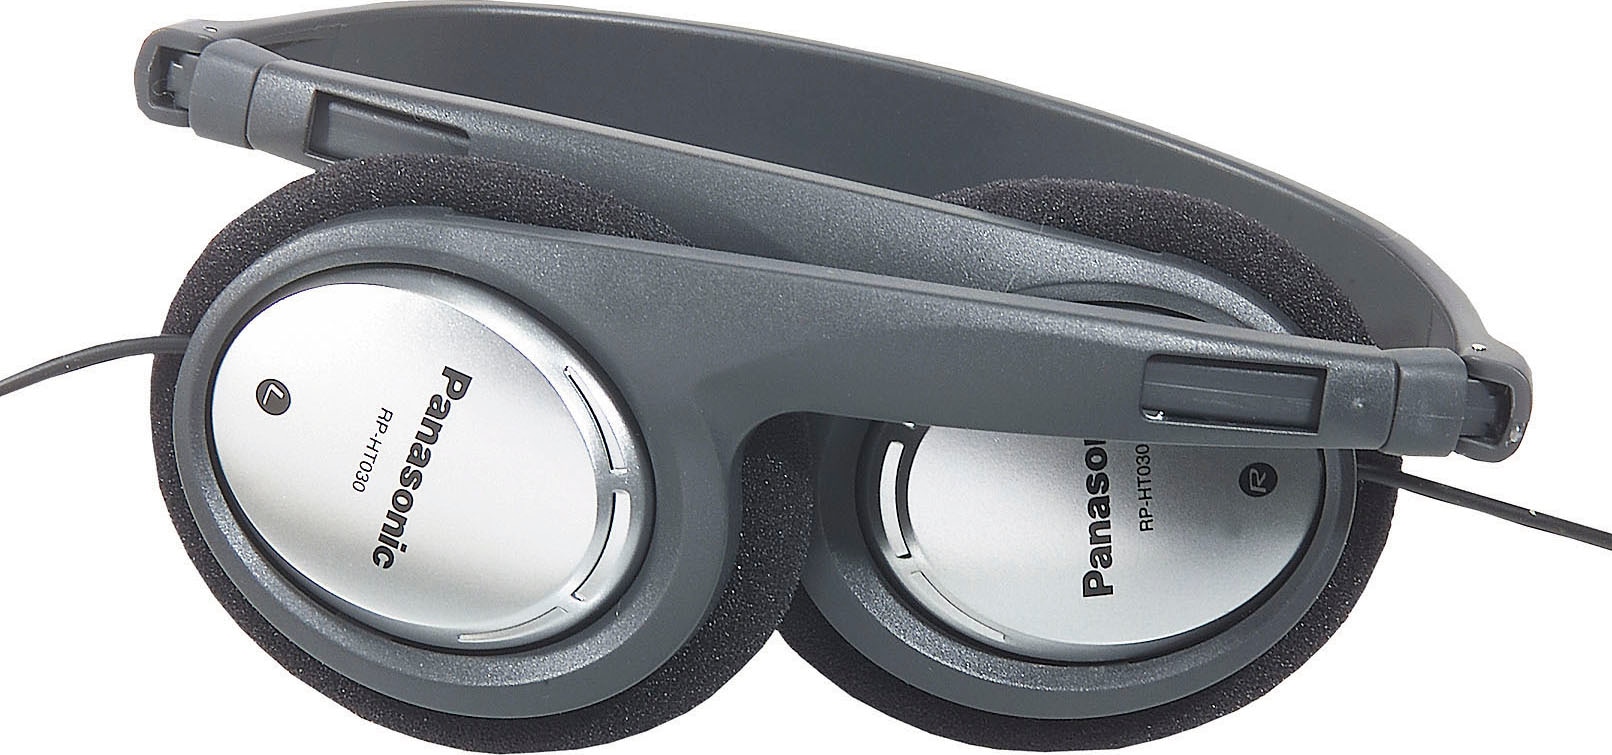 Panasonic On-Ear-Kopfhörer »RP-HT030 Leichtbügel-«